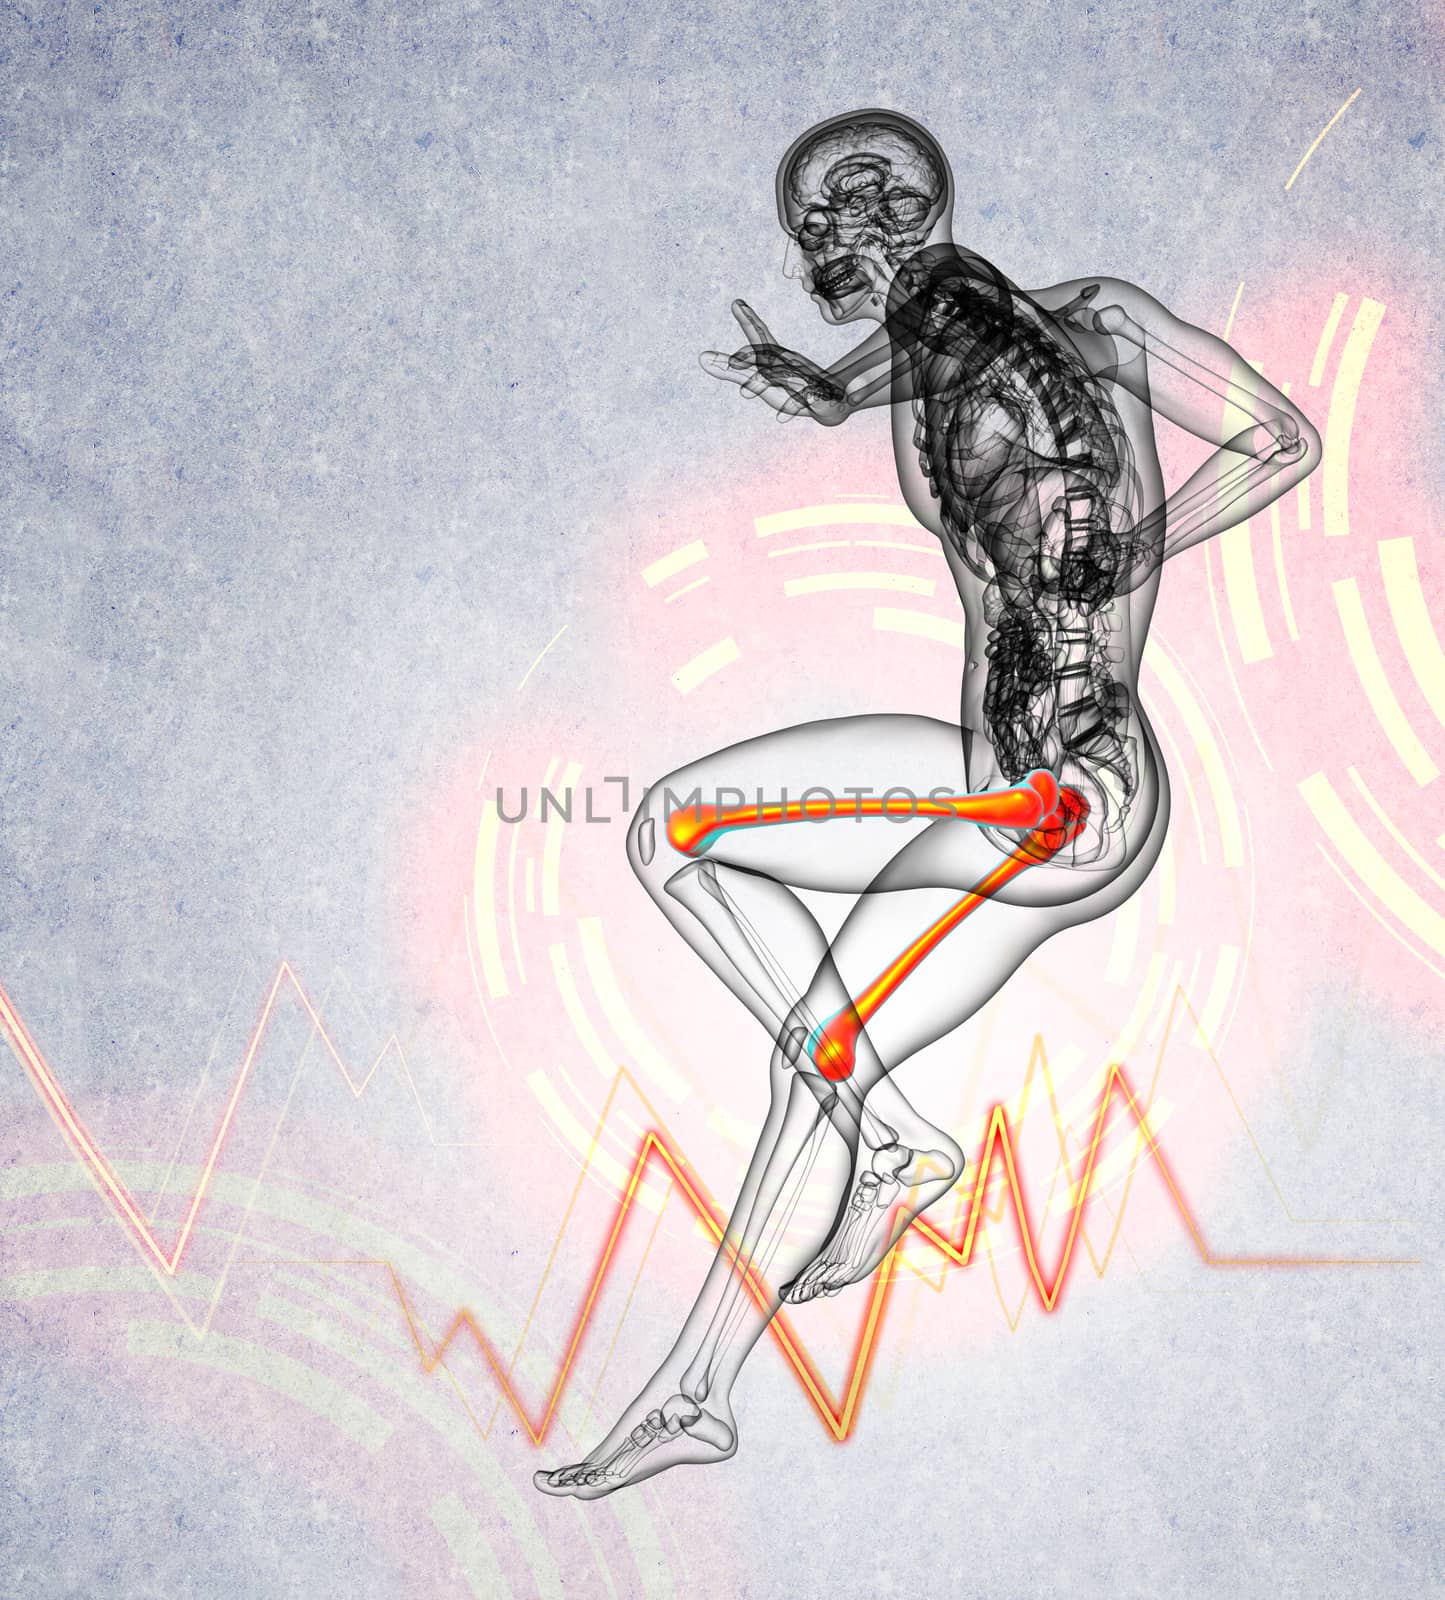 3d render medical illustration of the femur bone - side view